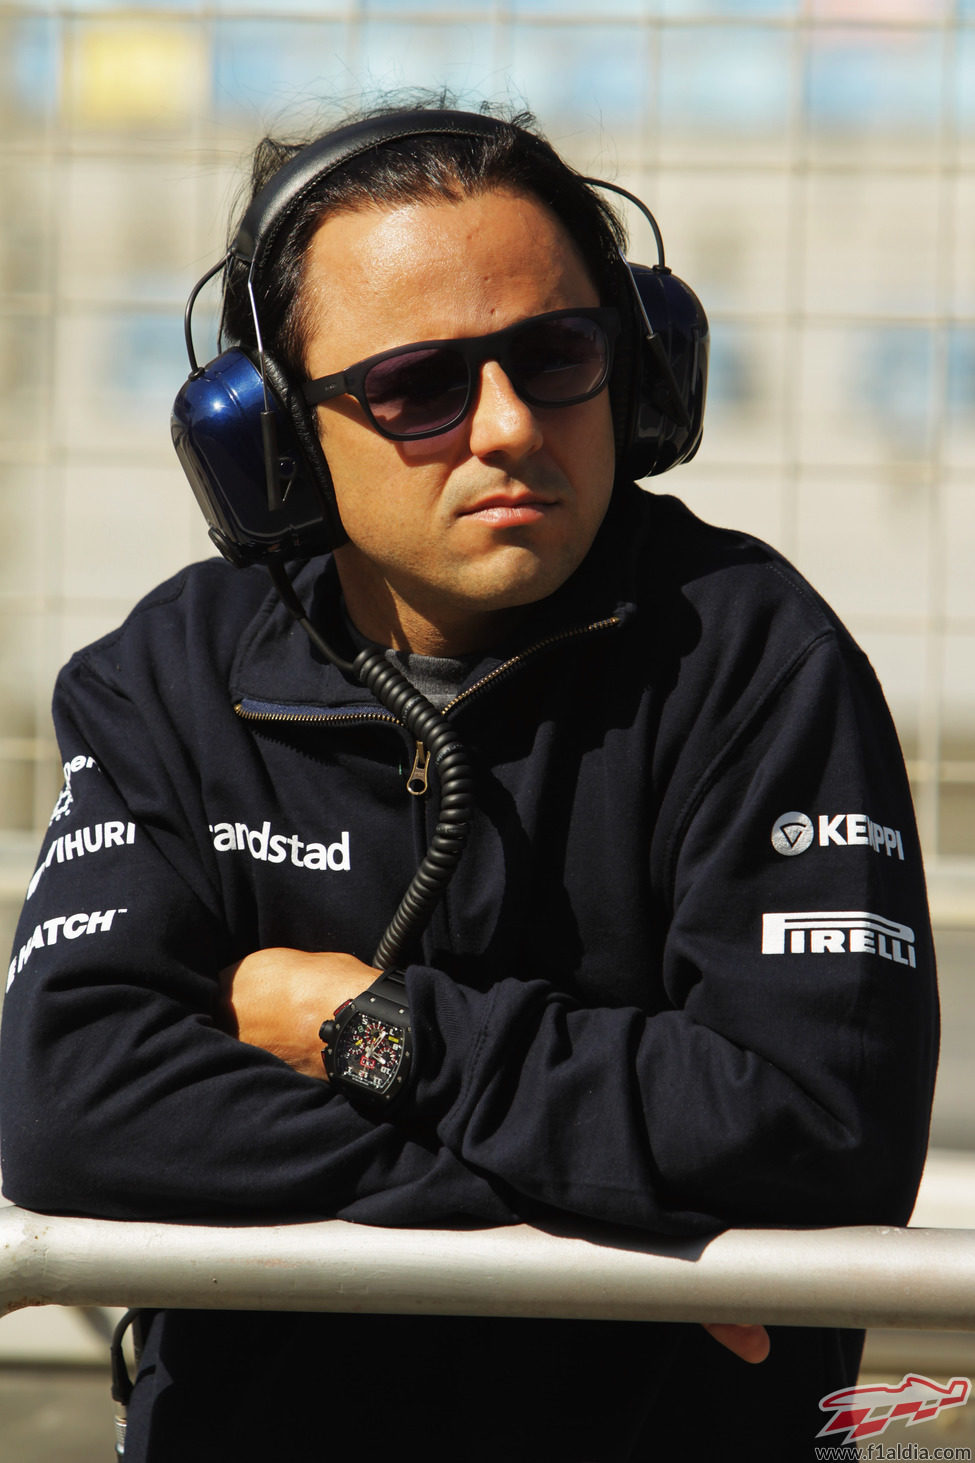 Jornada parcialmente libre para Felipe Massa